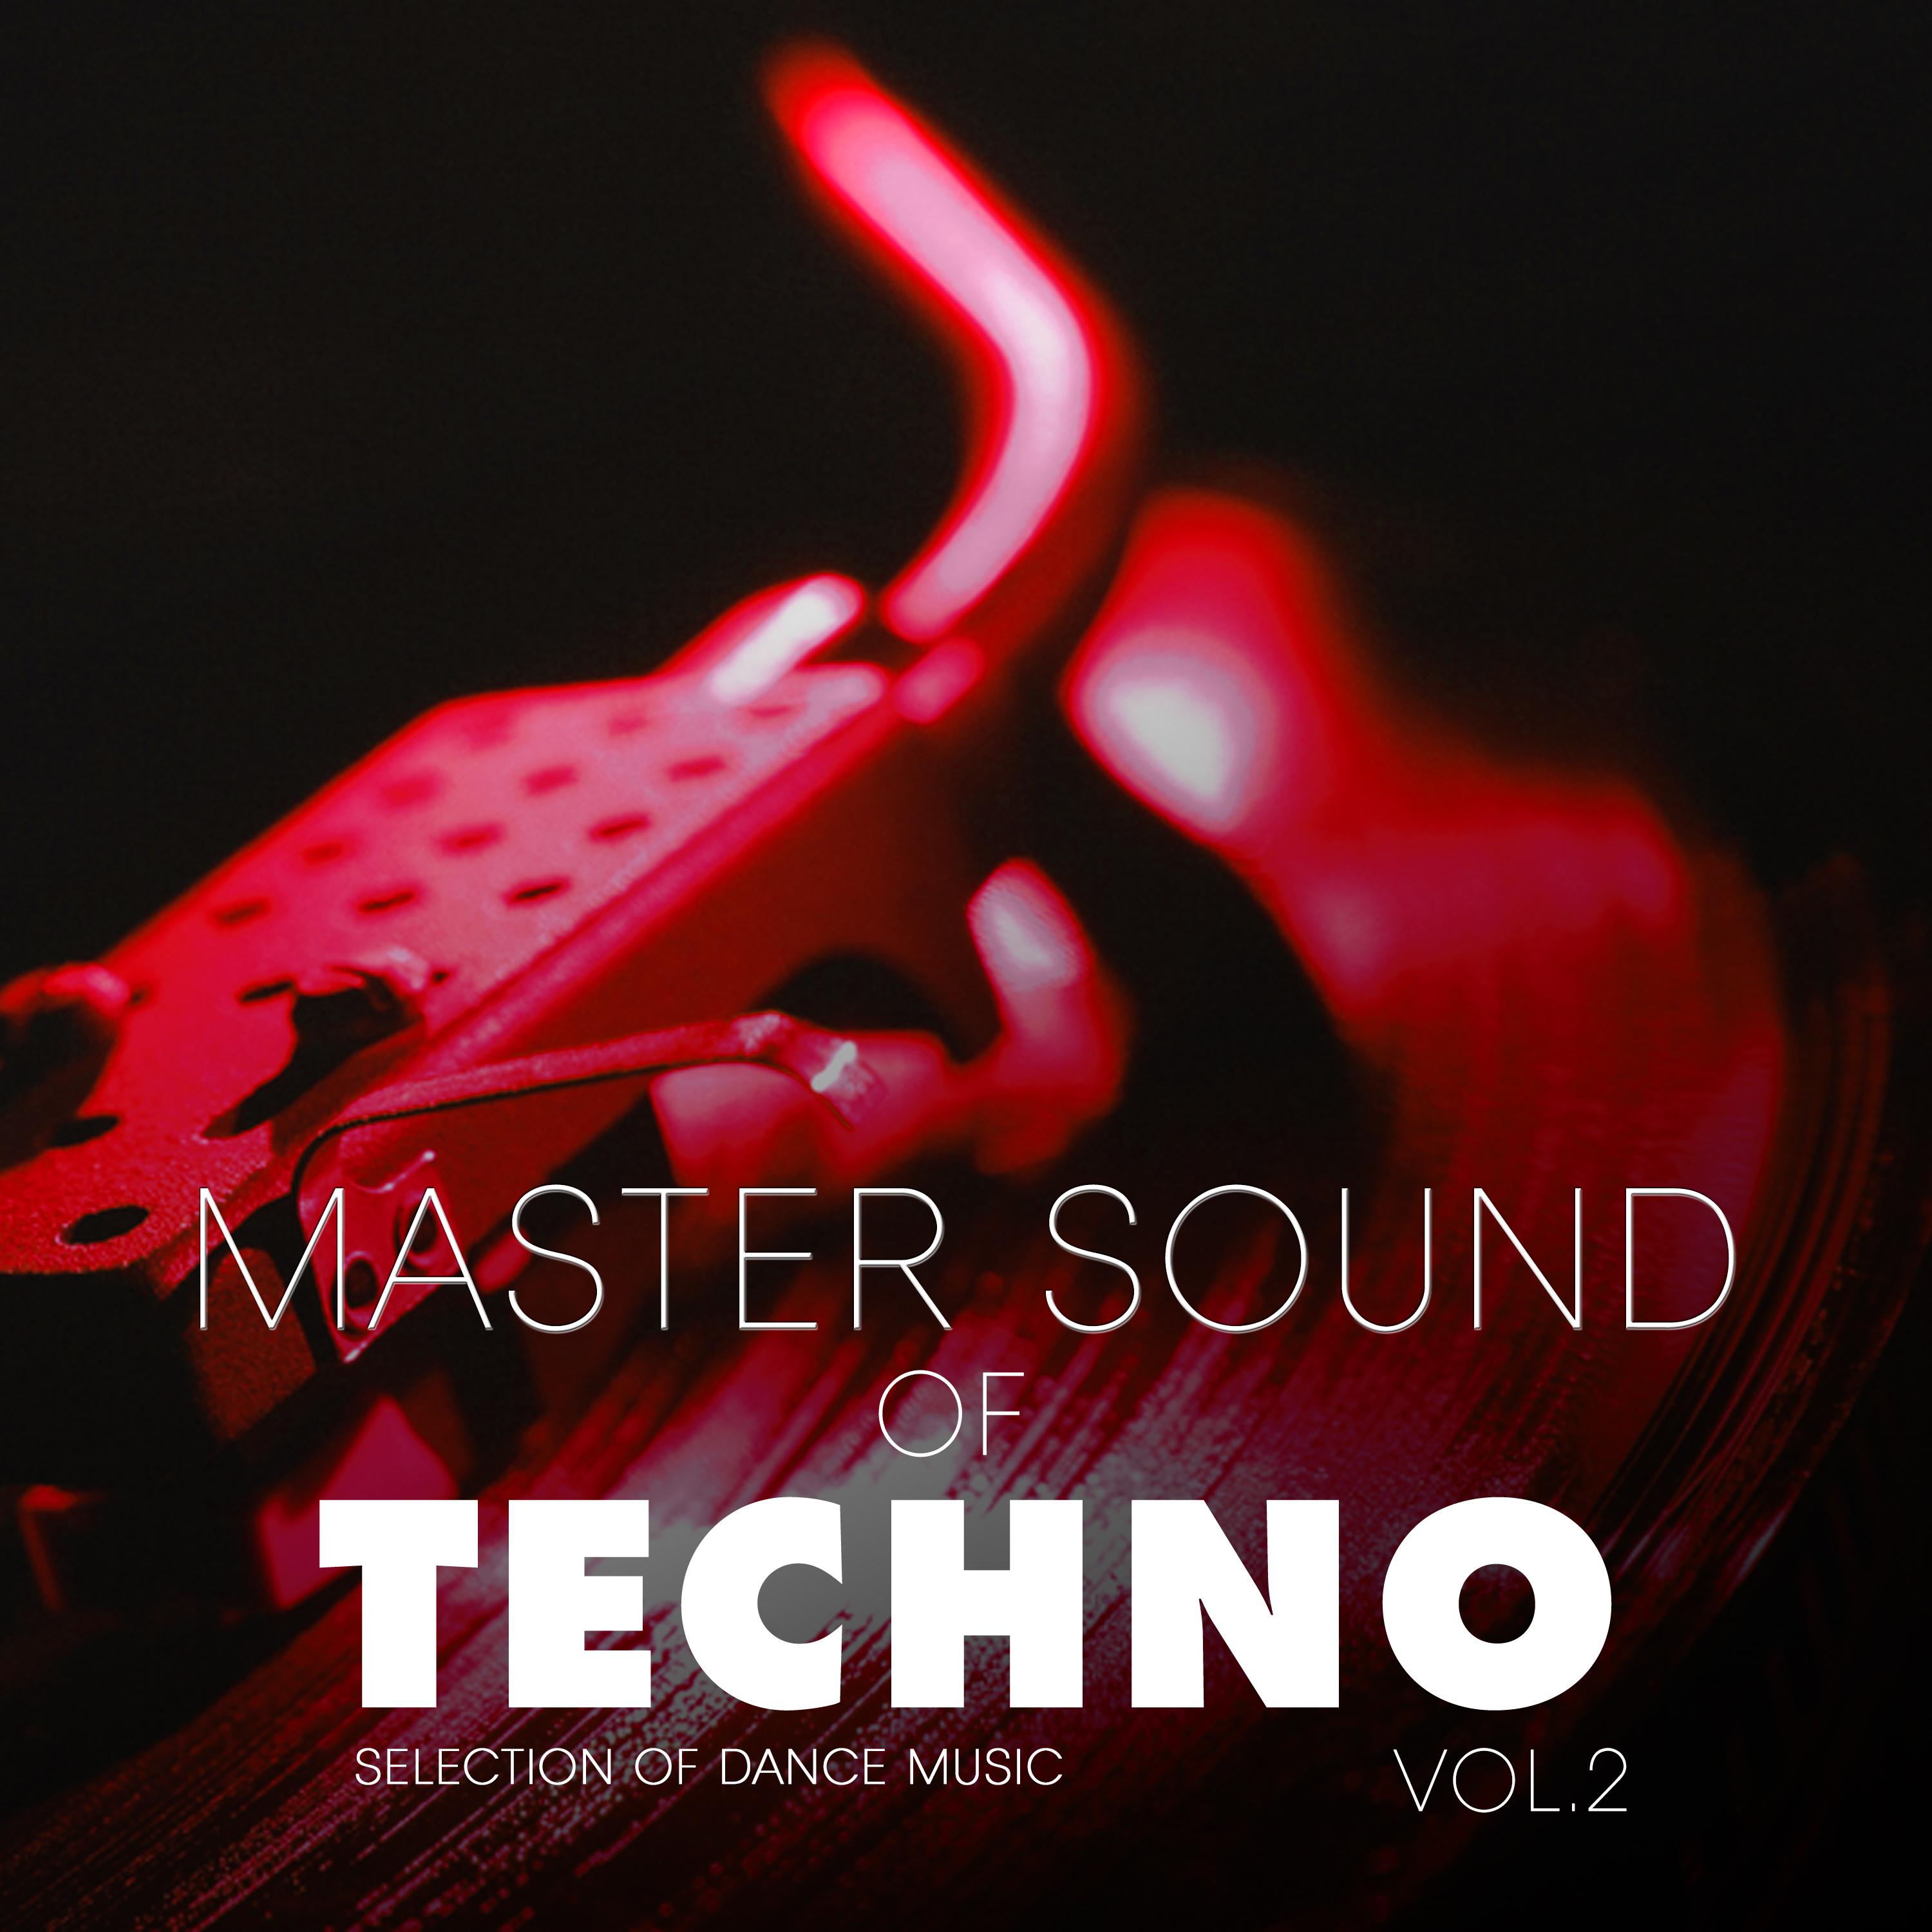 Master Sound of Techno, Vol. 2